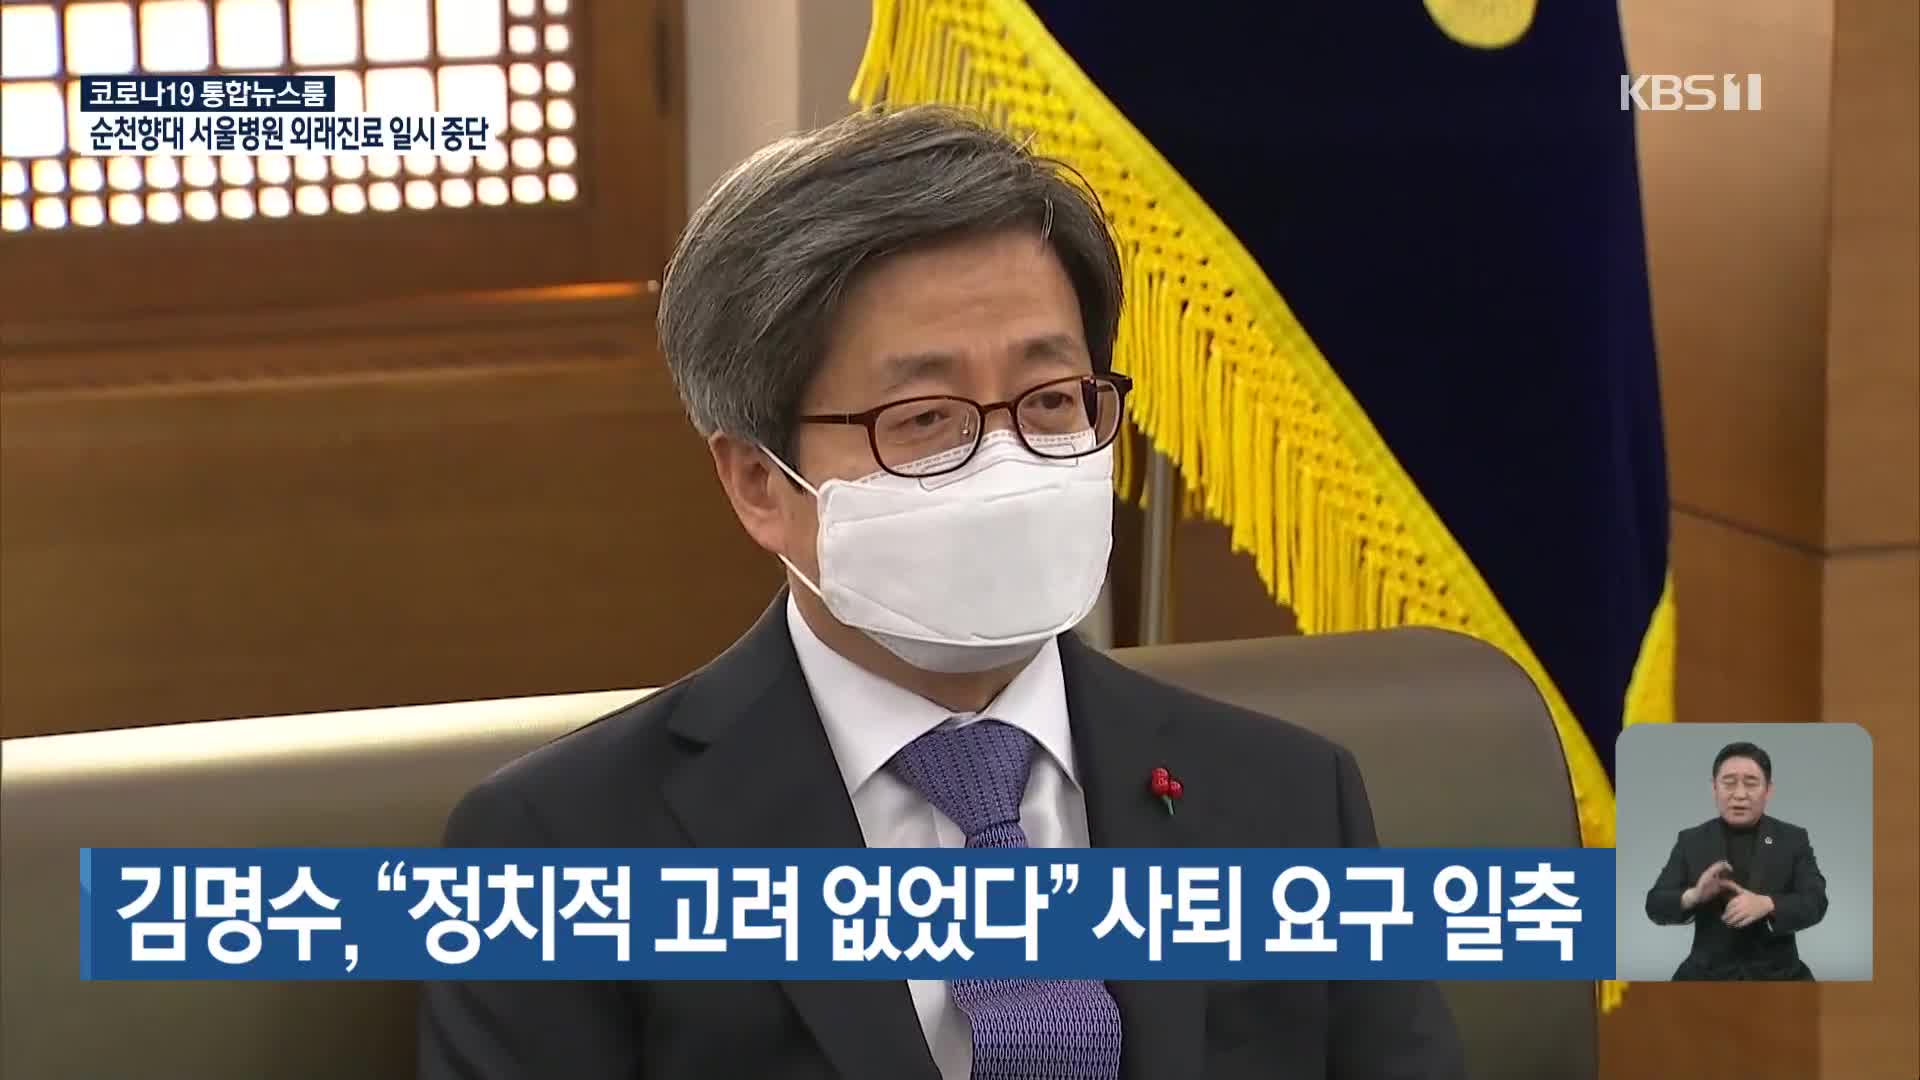 김명수, “정치적 고려 없었다” 사퇴 요구 일축